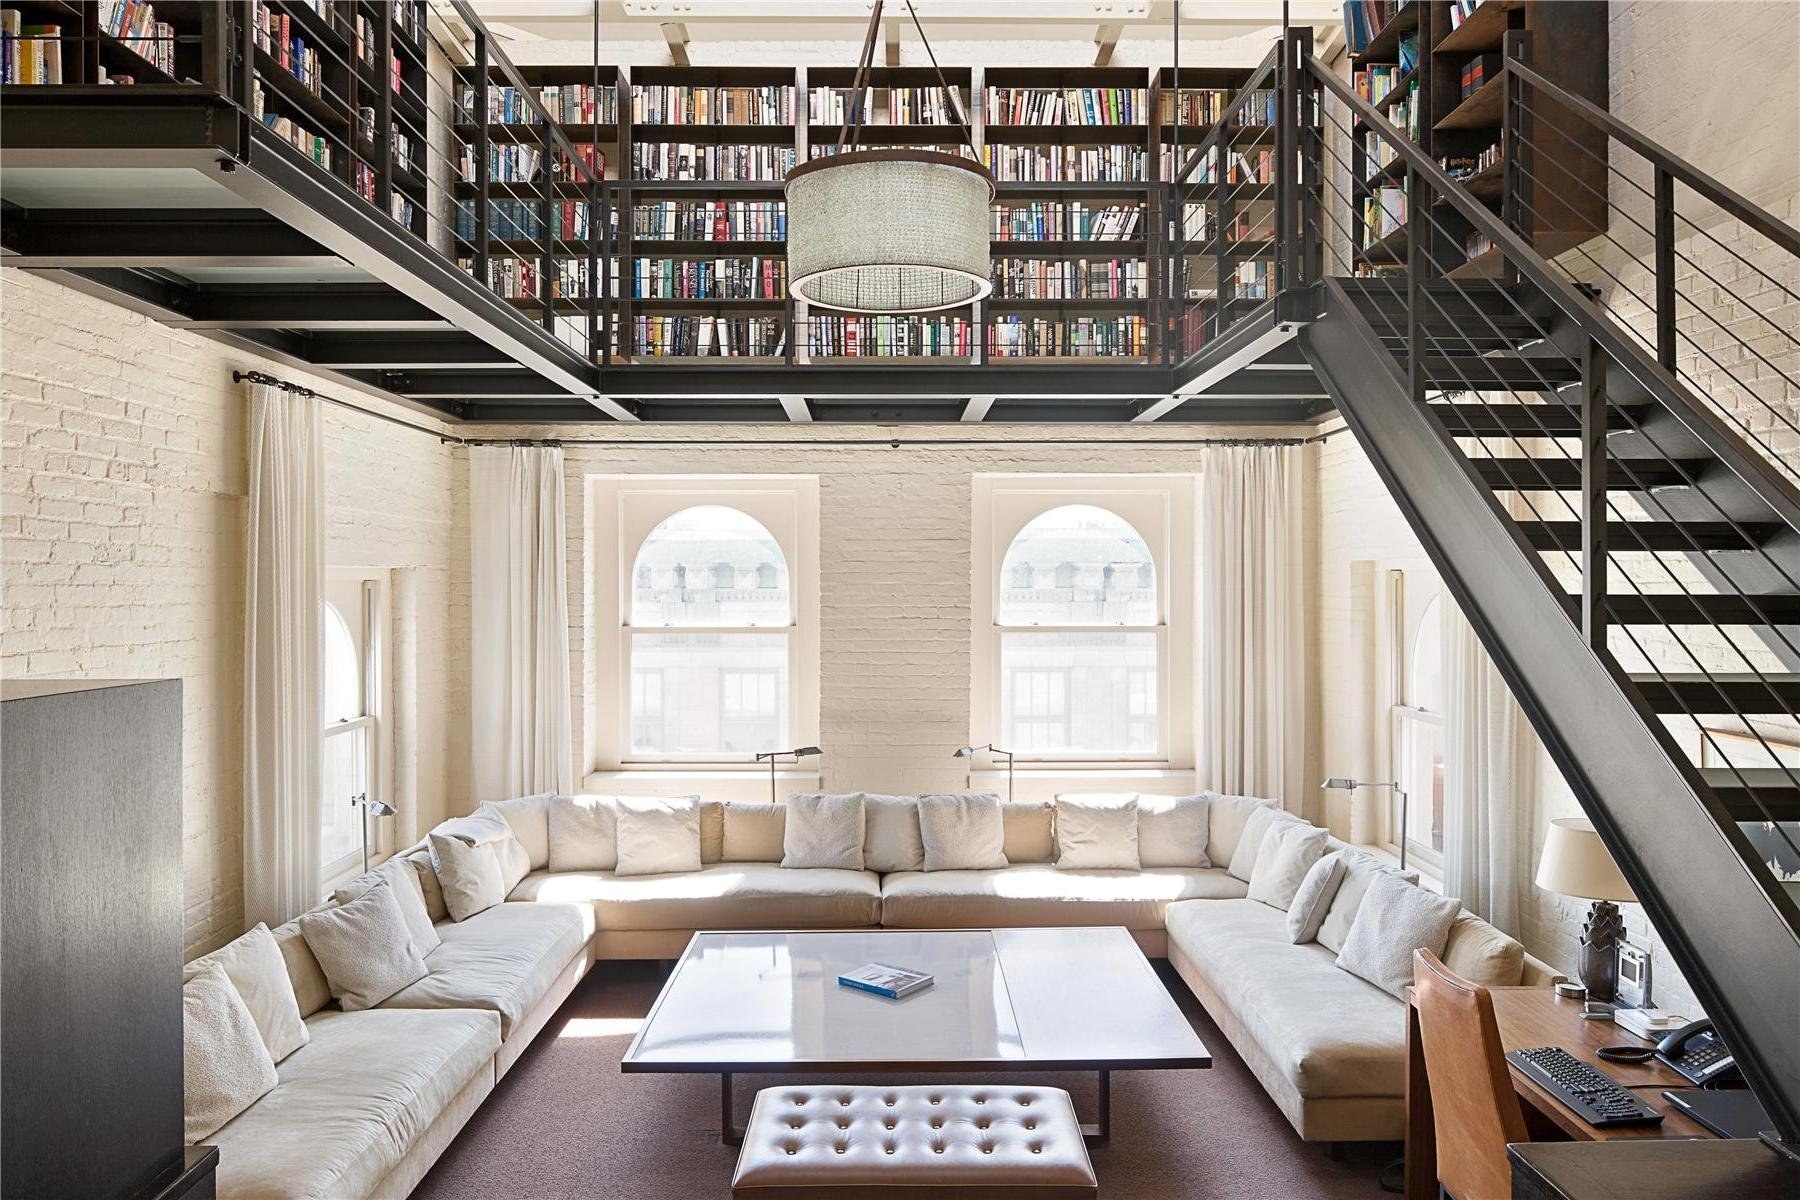 Большая библиотека в доме. Пентхаус в Нью-Йорке лофт. Интерьер с высокими потолками. Библиотека в доме интерьер. Интерьер дома с высокими потолками.